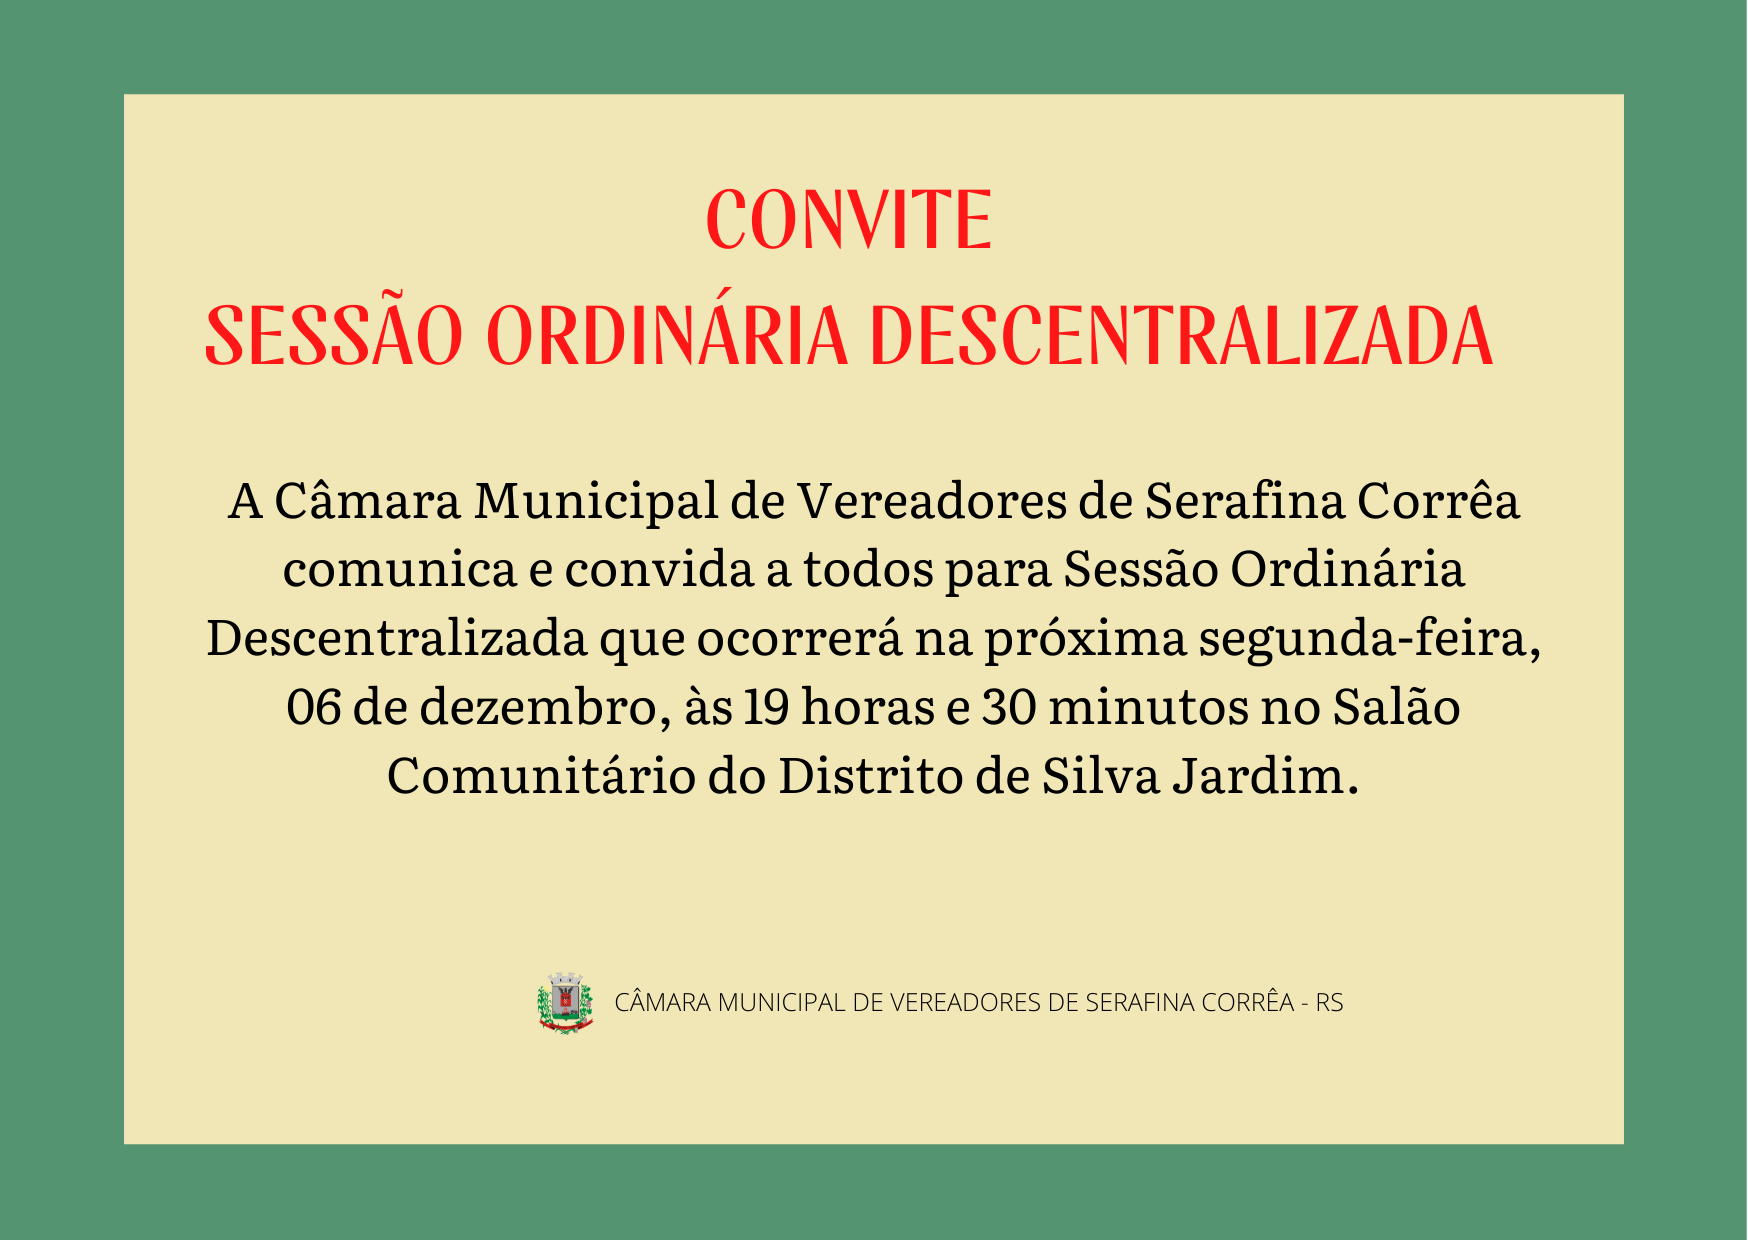 CONVITE - SESSÃO ORDINÁRIA DESCENTRALIZADA